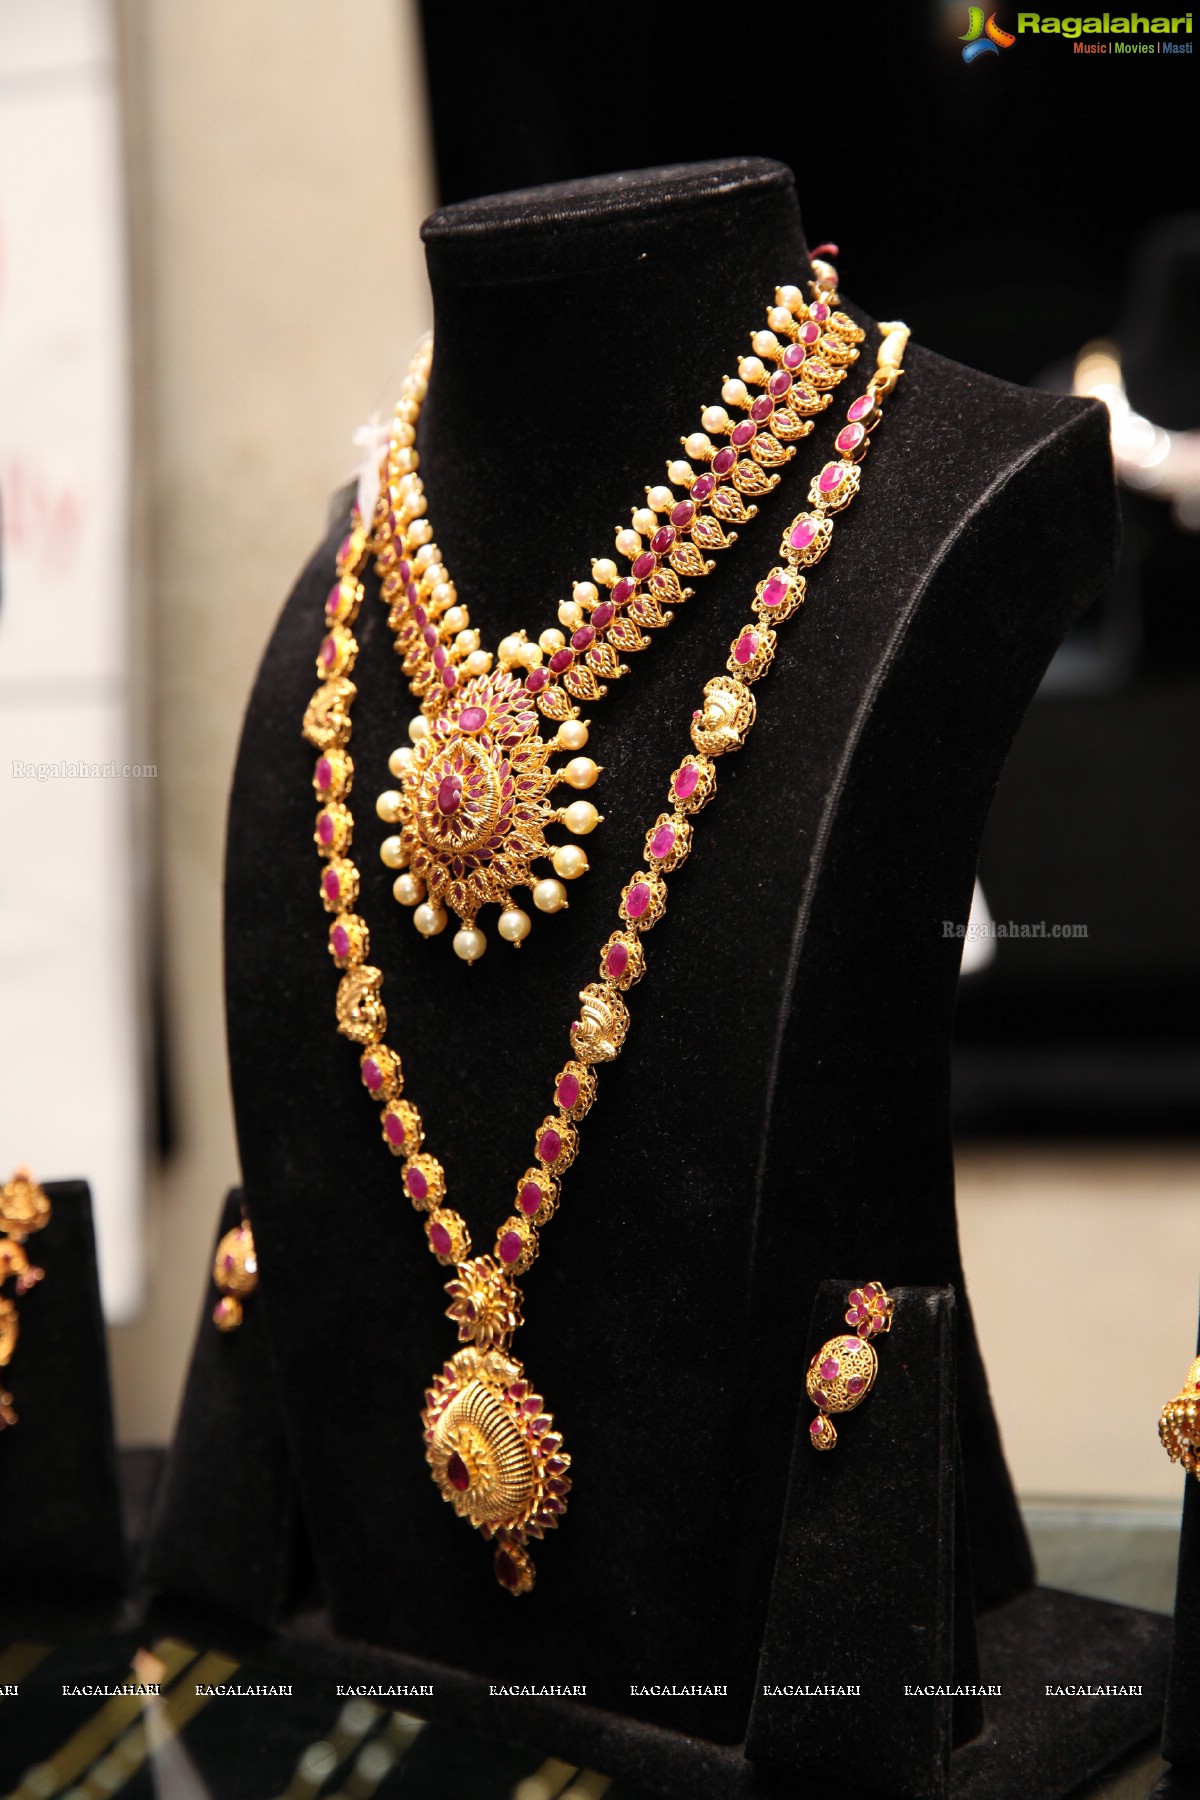 Jenny Honey launches Manepally Jewellers Akshaya Tritiya Collection 2017, Secunderabad